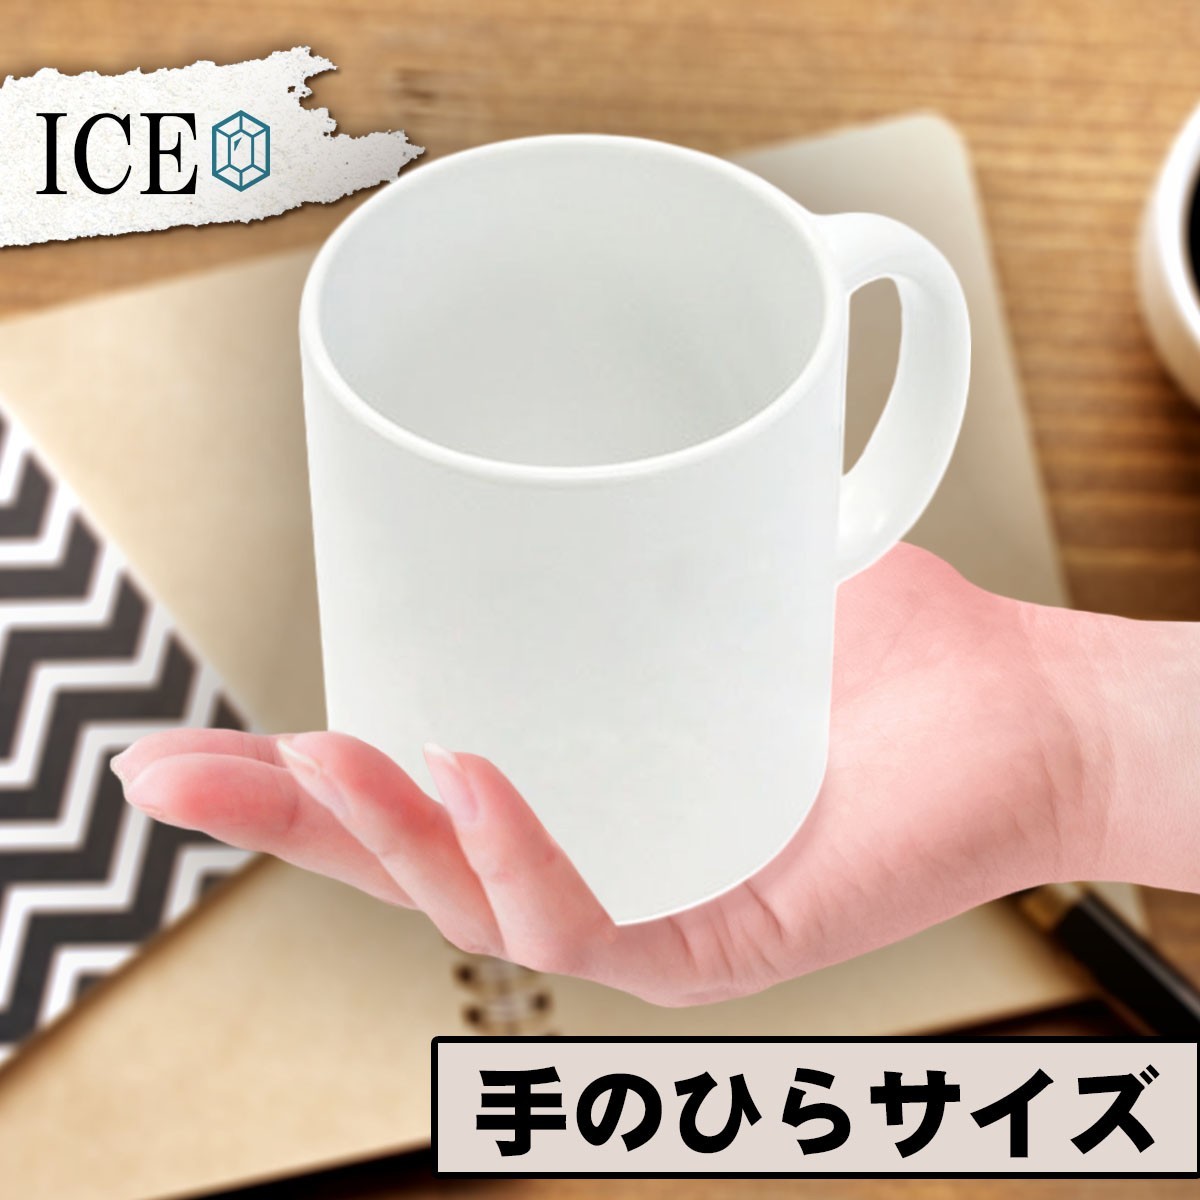 クローバーをくわえているアヒル おもしろ マグカップ コップ 陶器 可愛い かわいい 白 シンプル かわいい カッコイイ シュール 面白い ジ_画像2